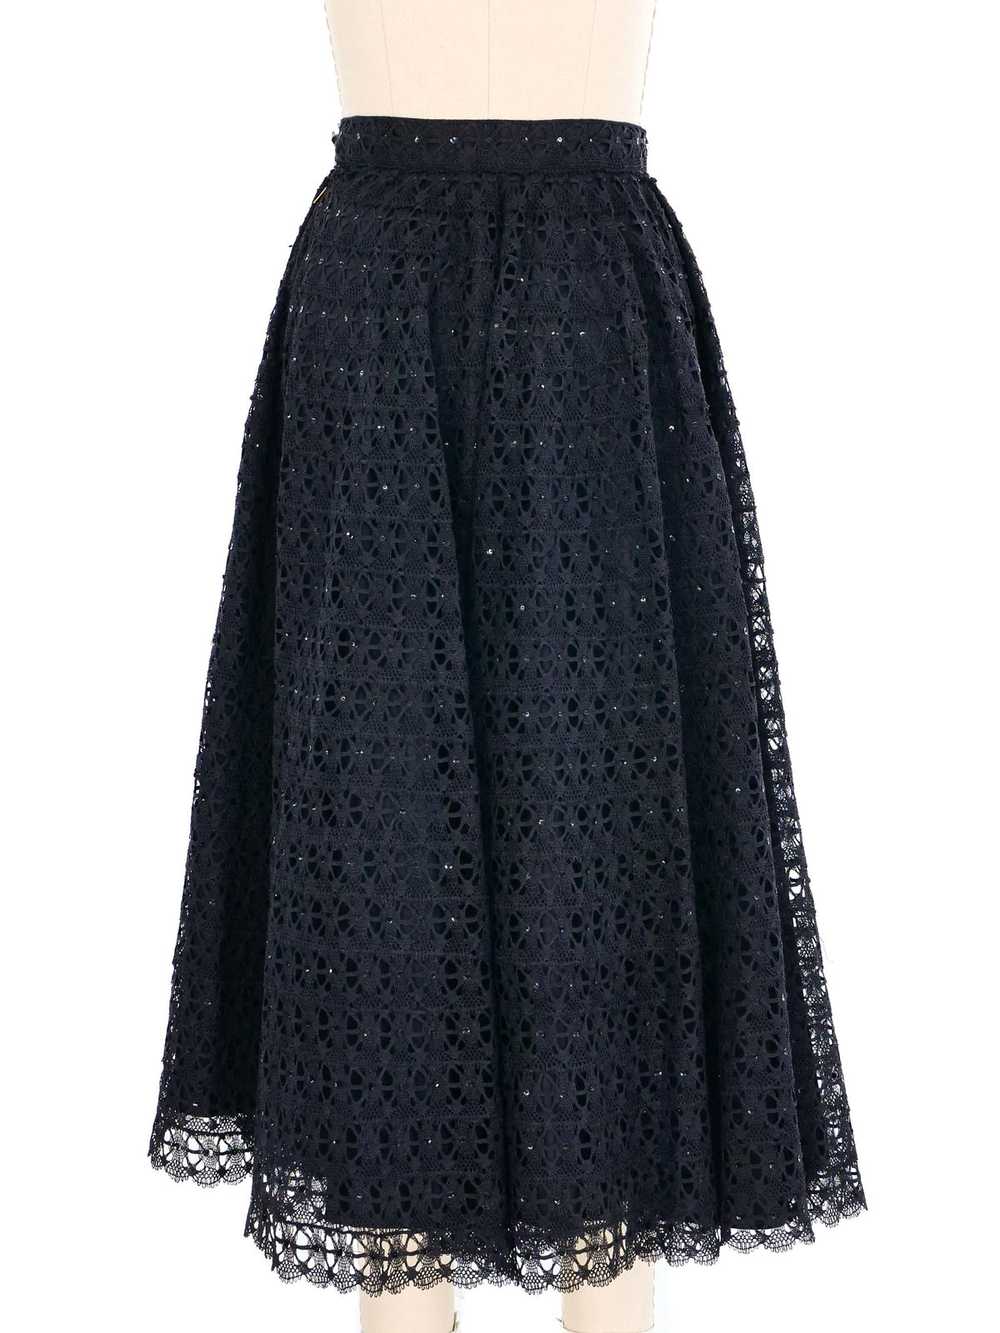 Black Embellished Lace Midi Skirt - image 8